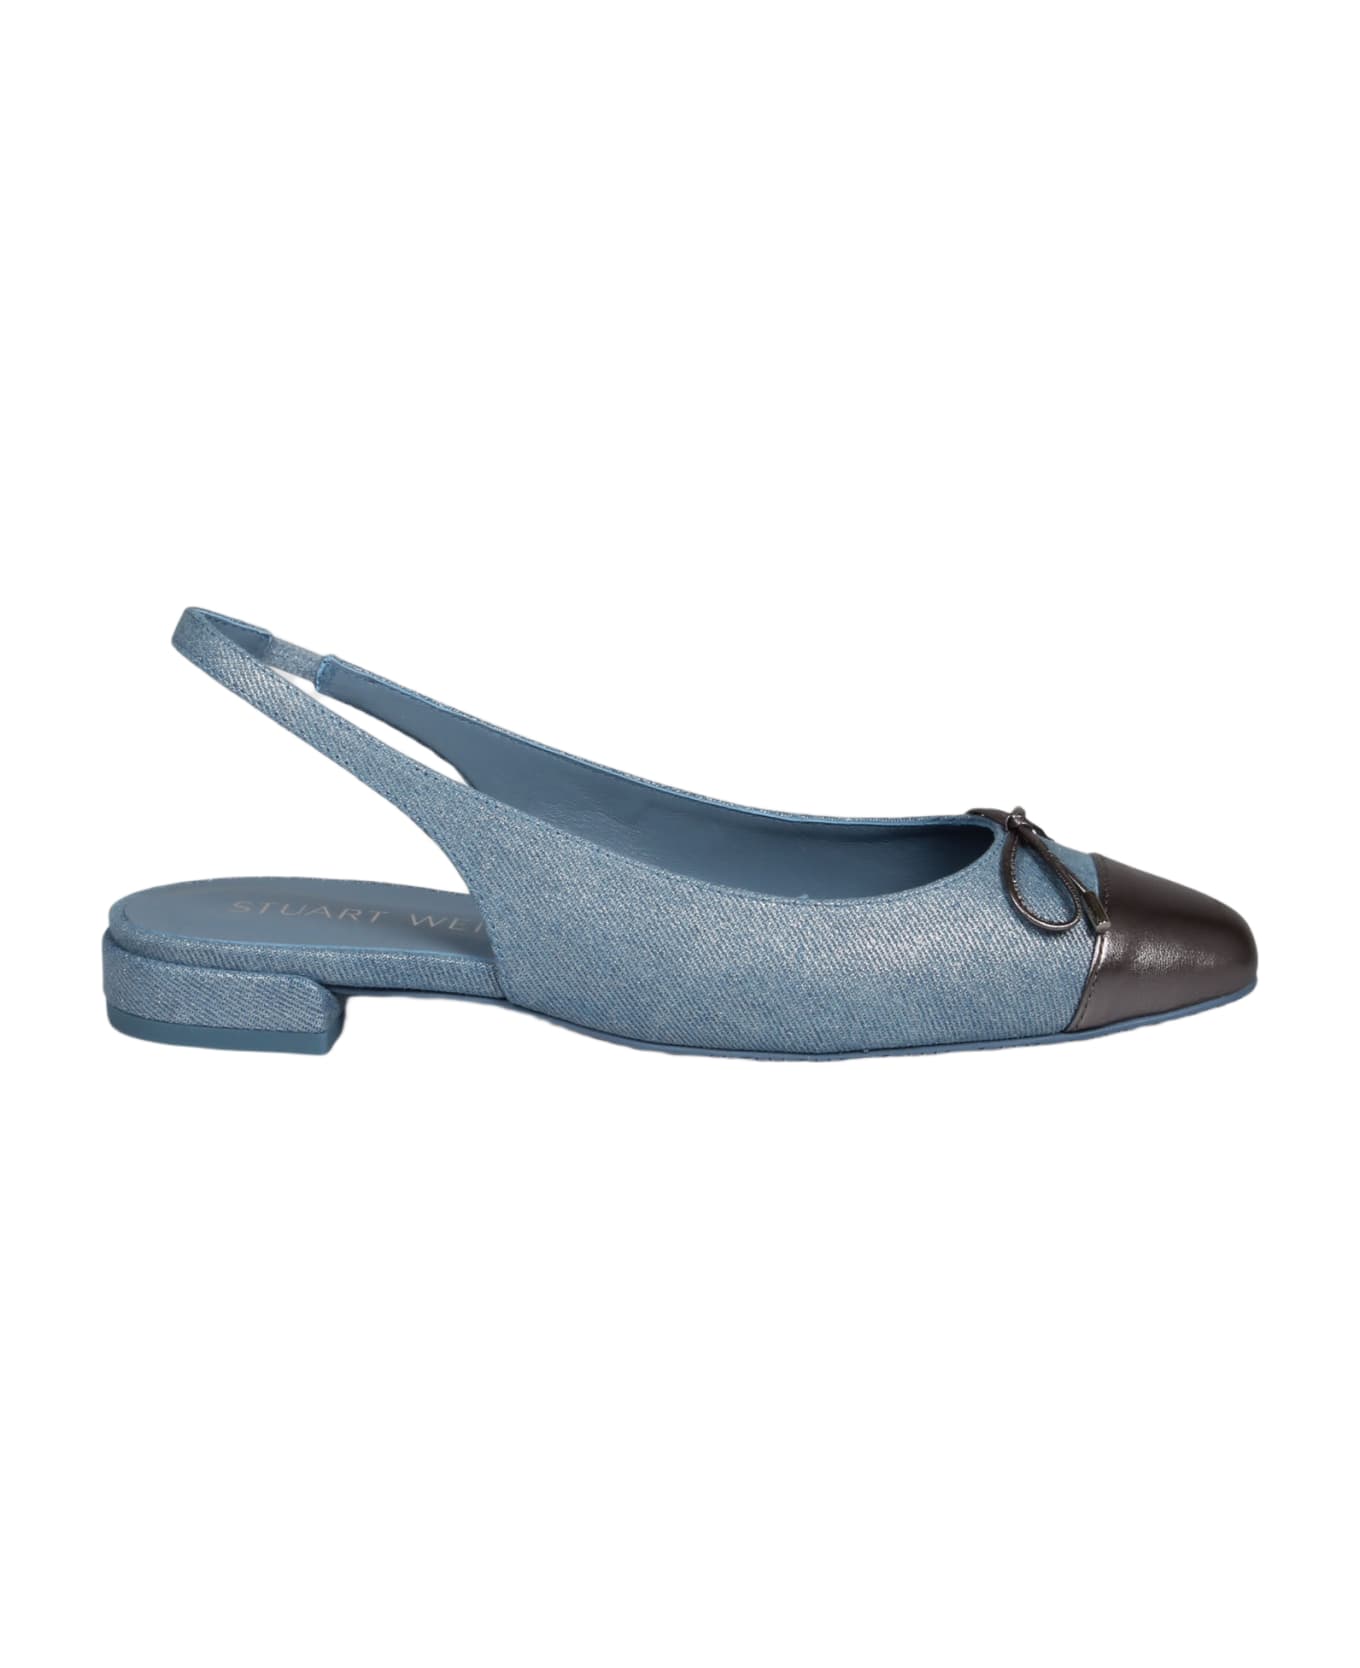 Stuart Weitzman Sleek Bow Slingback Flat Ballerina - Blue